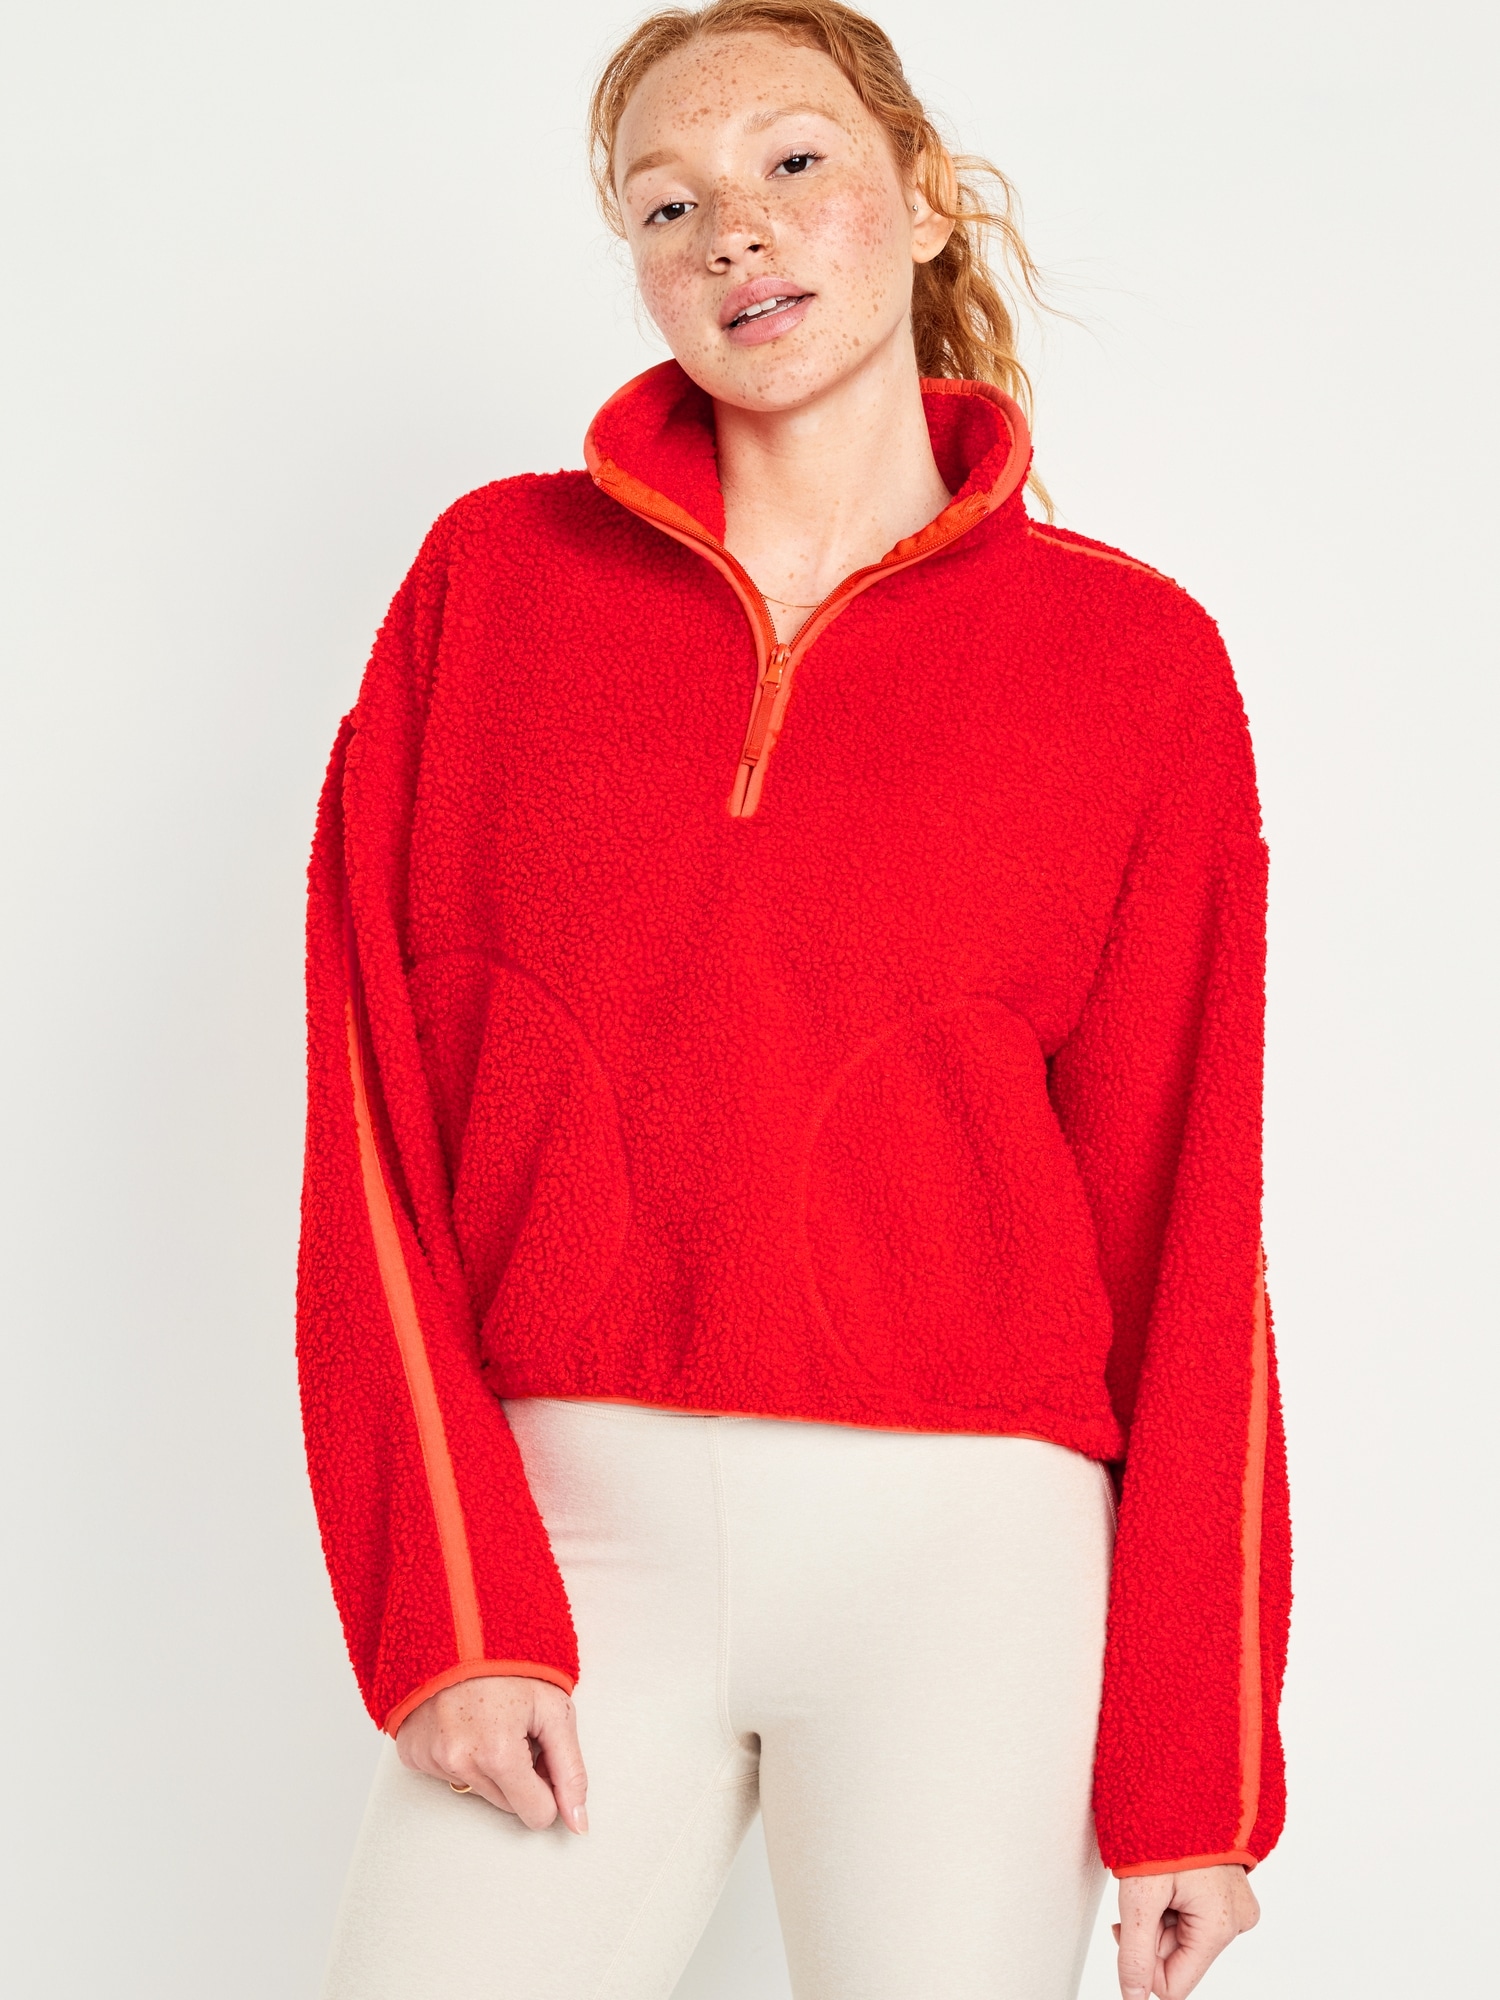 Old Navy XXL Red Quarter Zip Sweater / Fleece